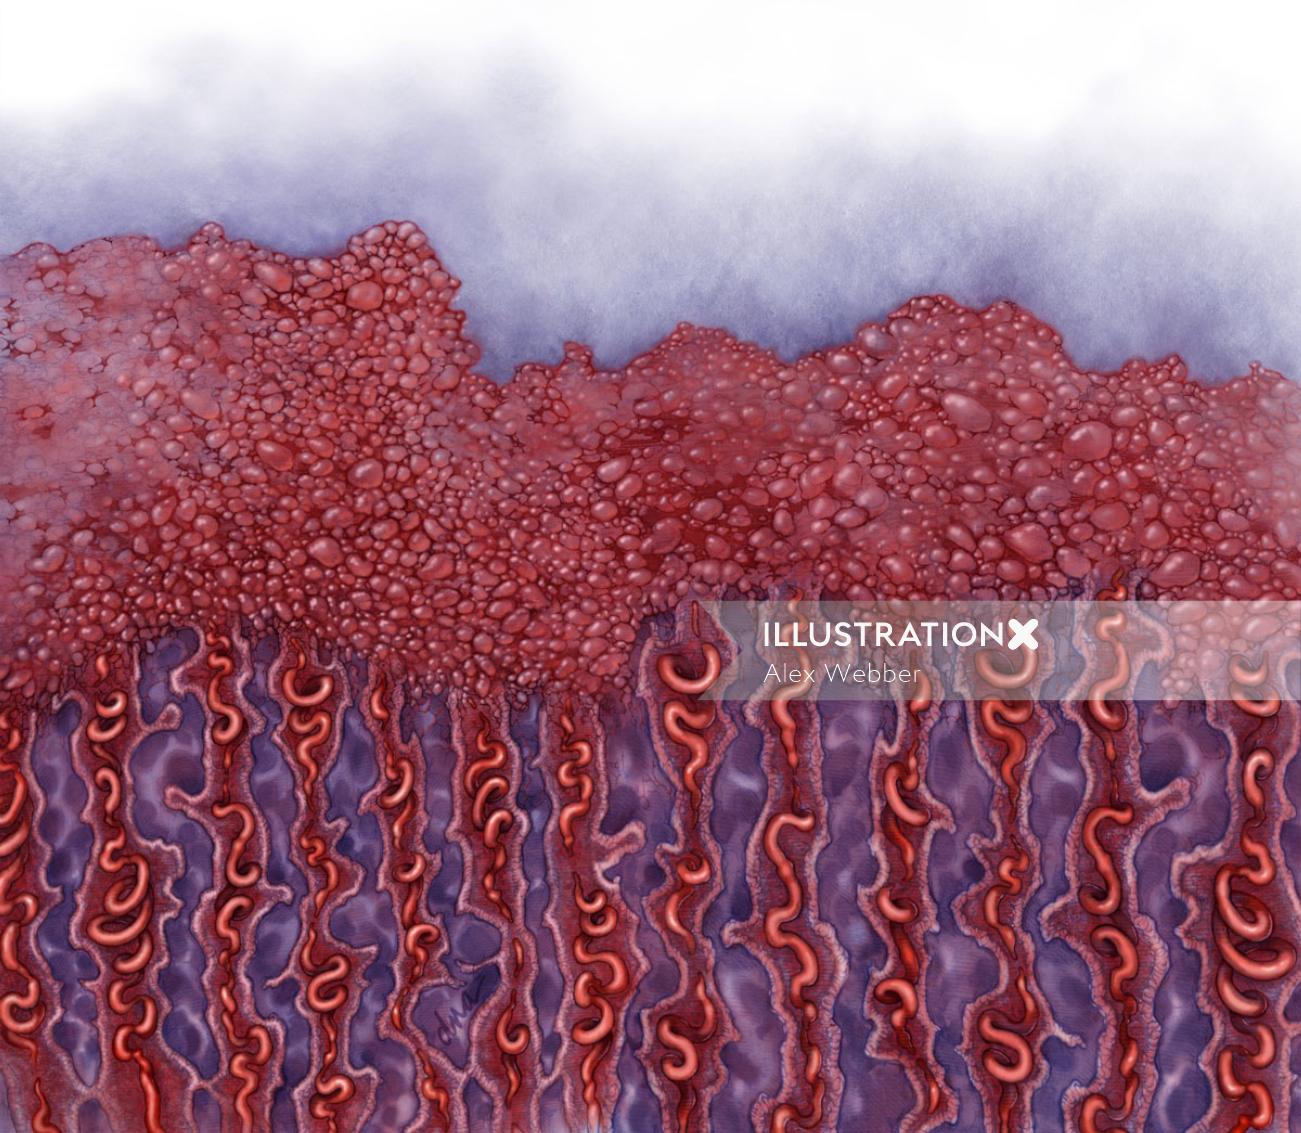 Ilustração do corte transversal do endométrio